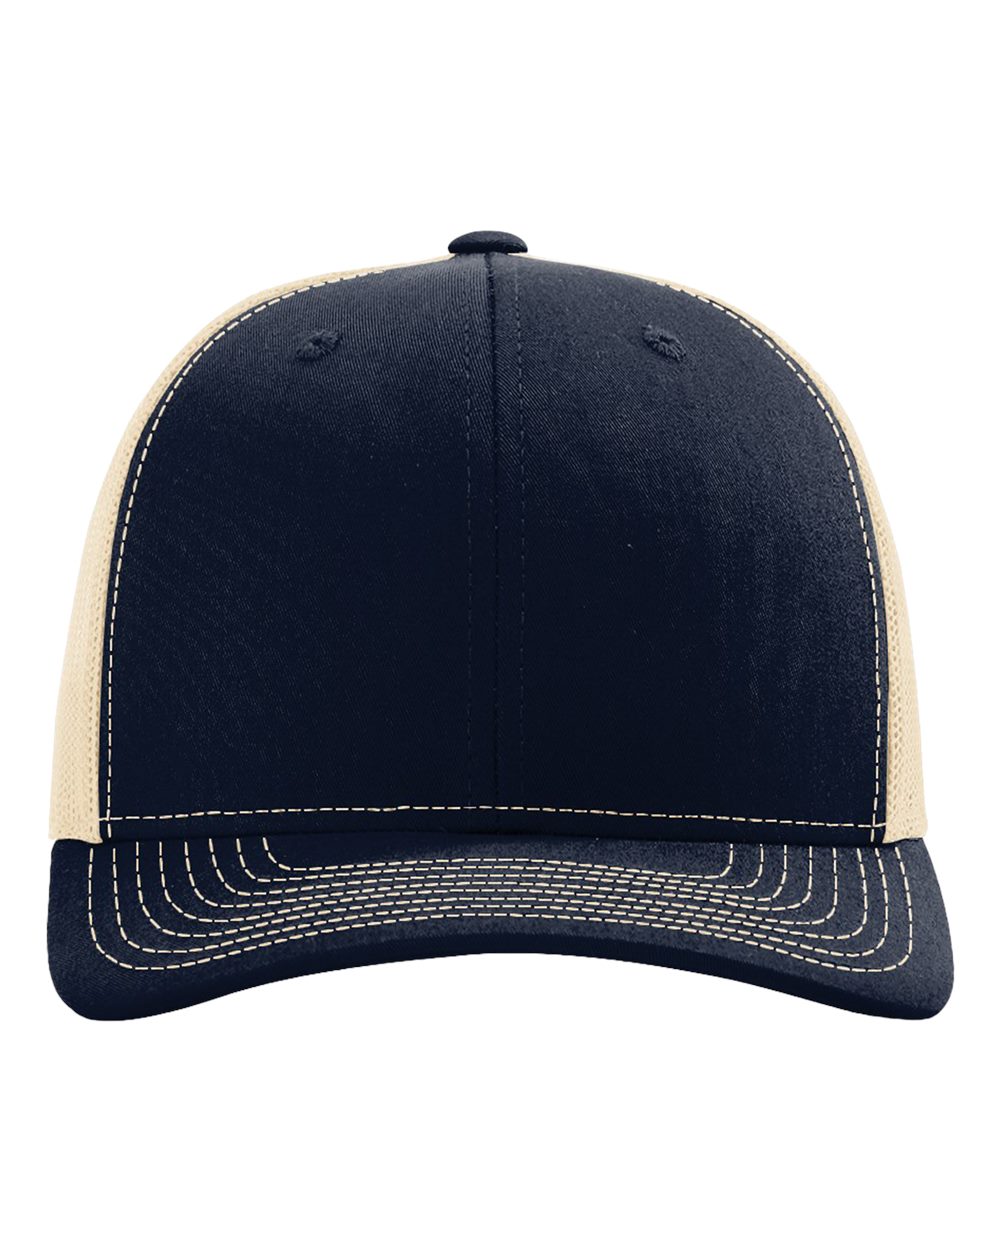 Richardson Snapback Trucker Hat (112) in Navy/Khaki